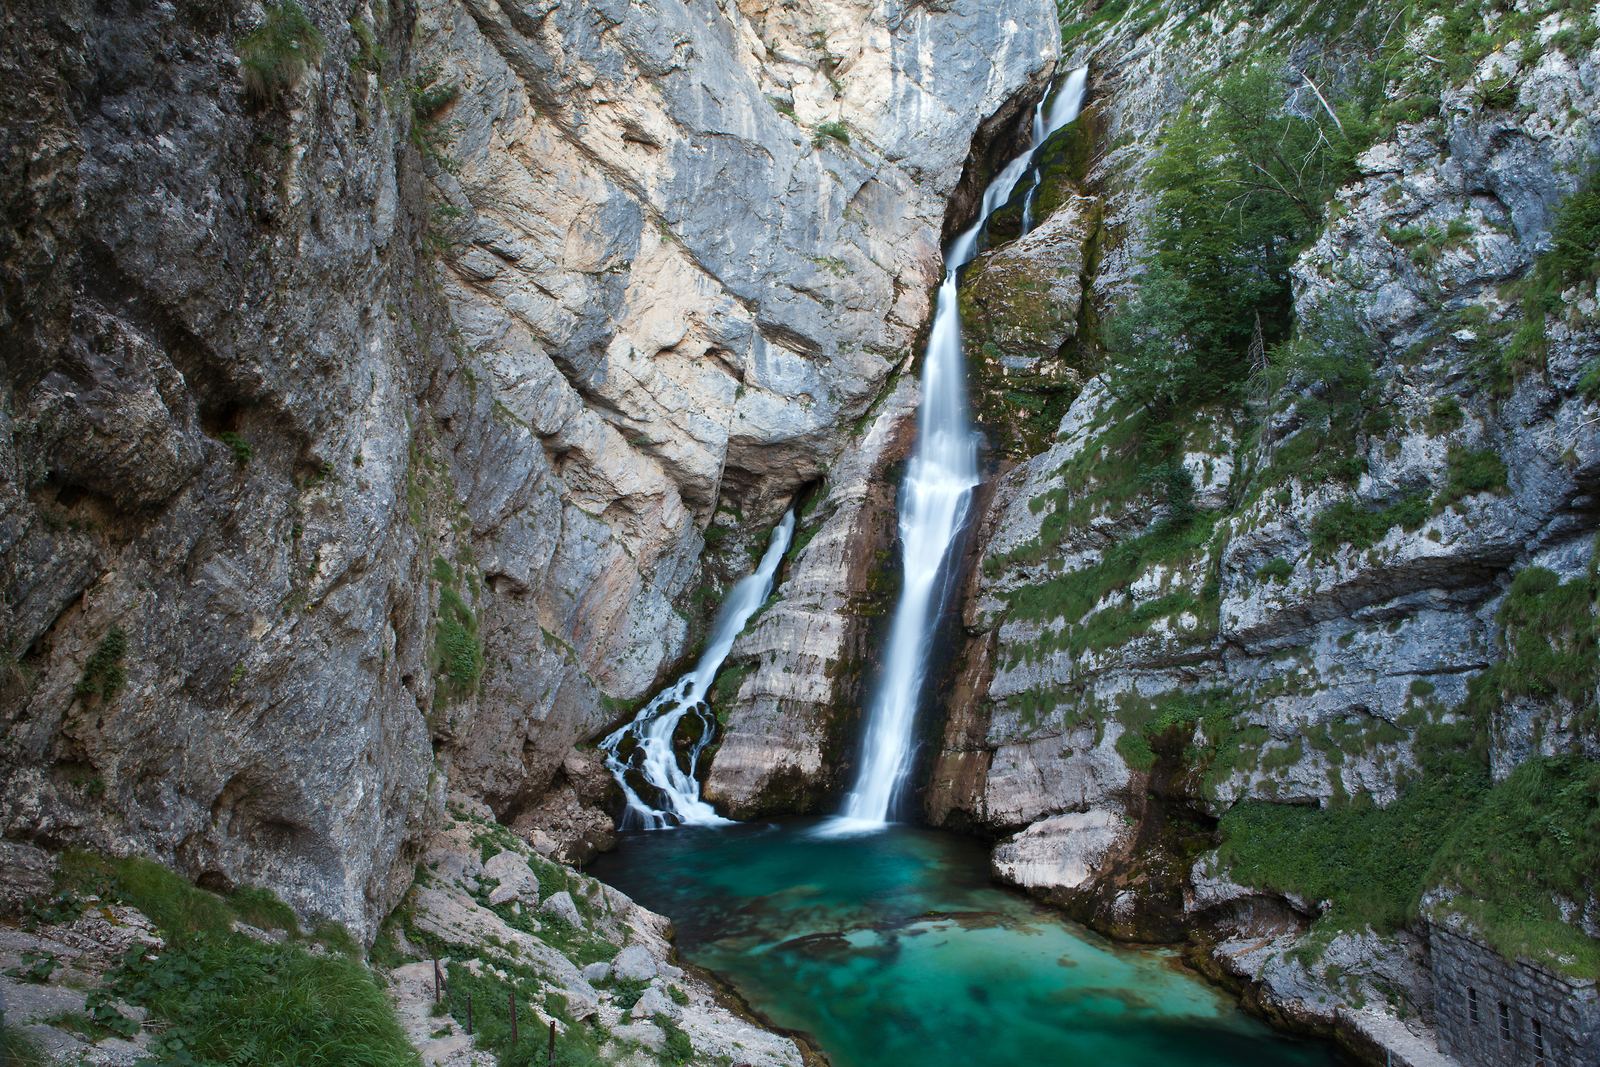 Vodopád Savica, Bohinj, Slovinsko. Foto: Jošt Gantar